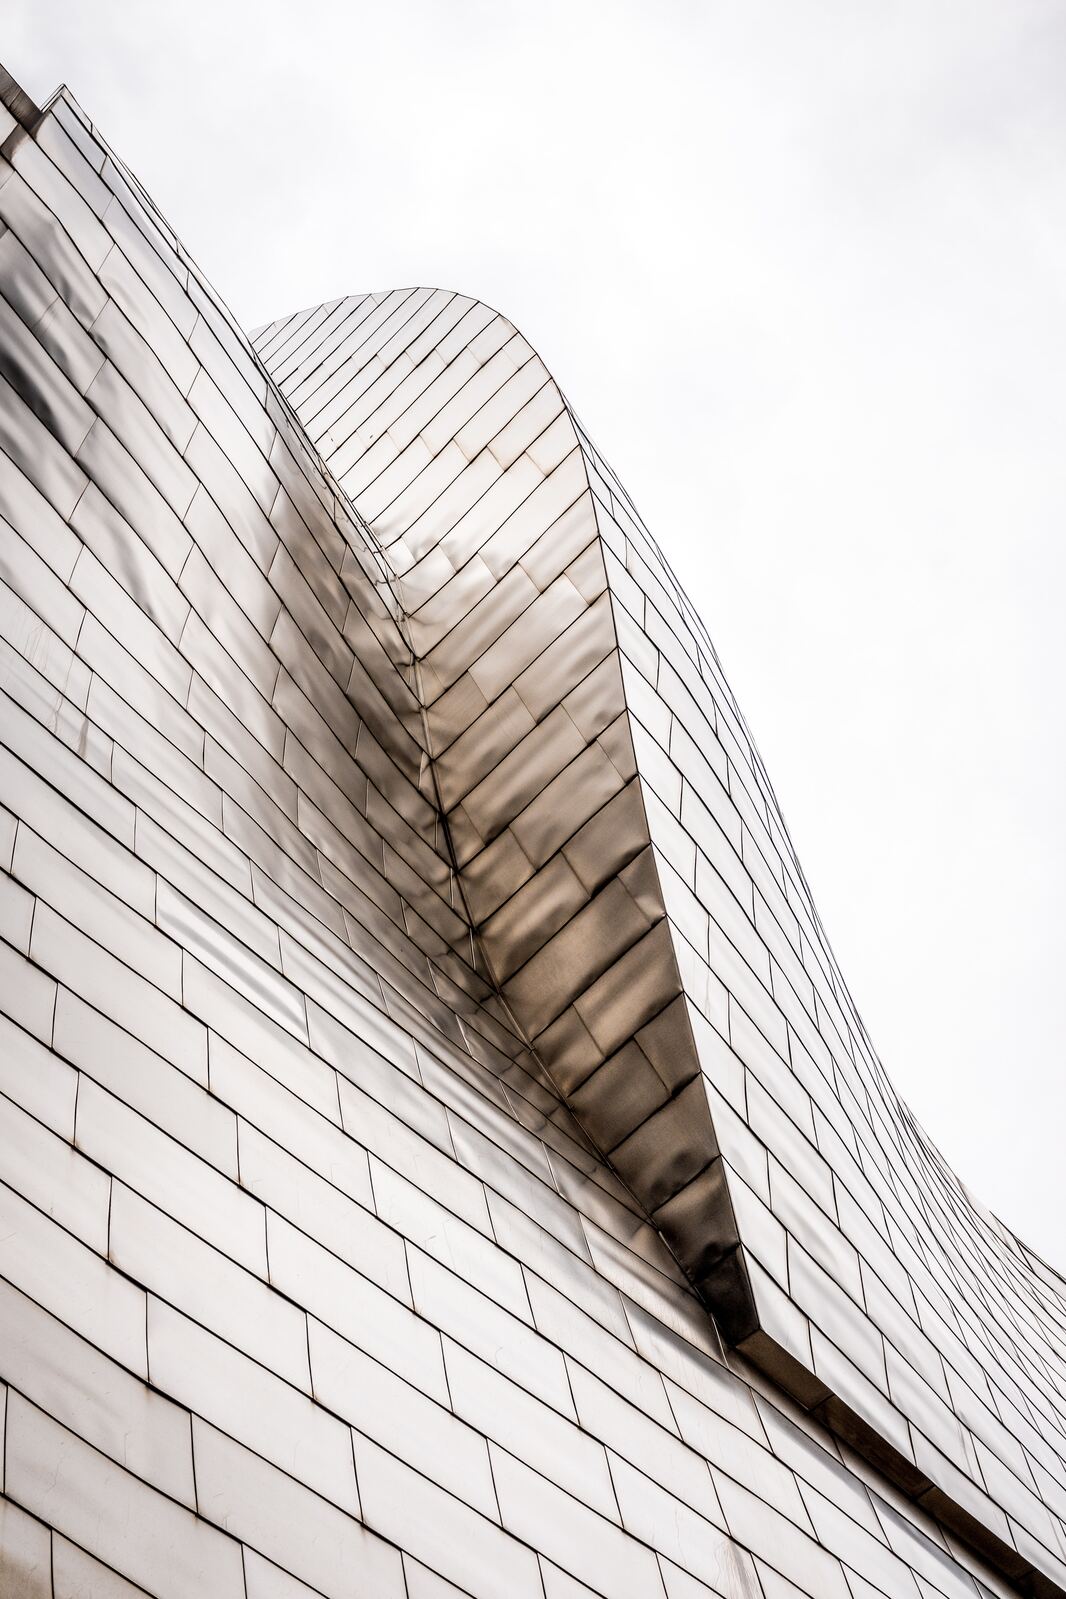 Image of Guggenheim Museum Bilbao by Team PhotoHound